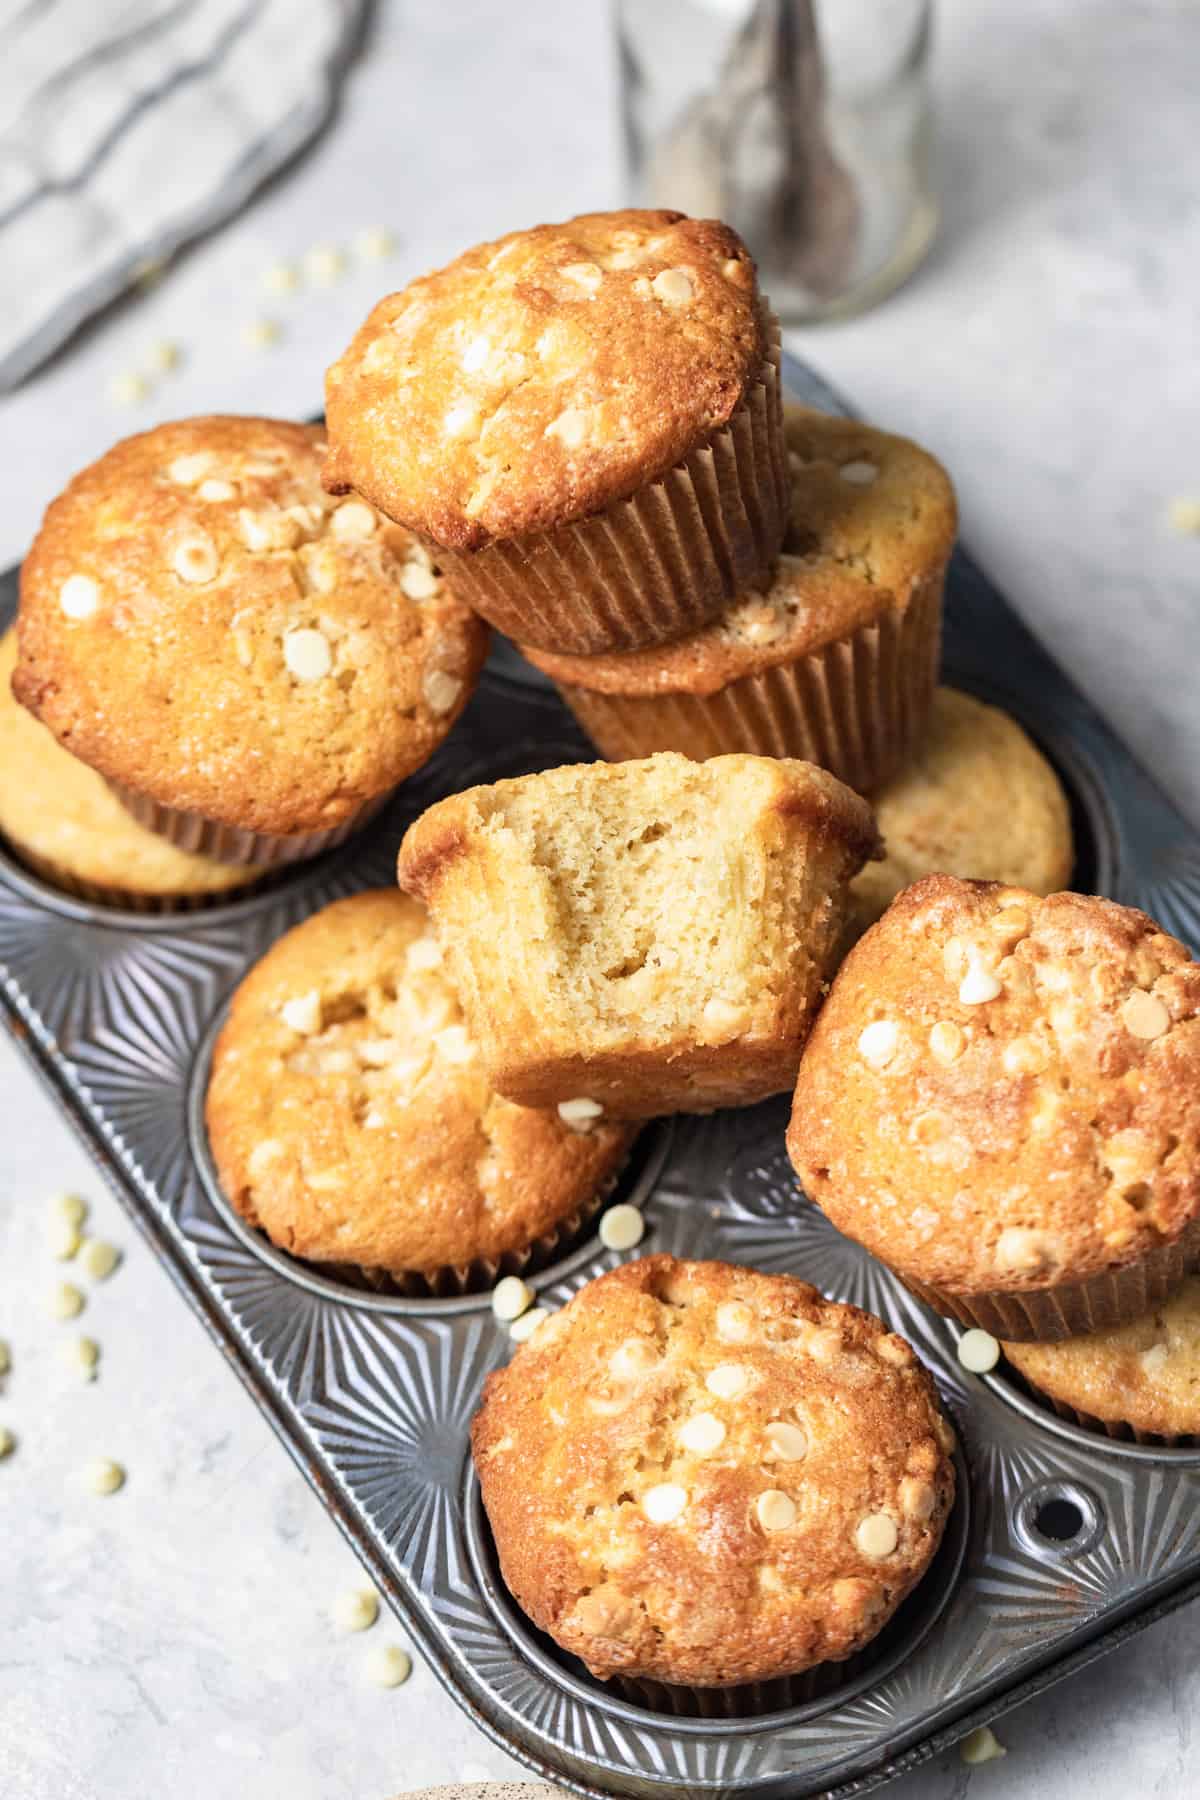 Muffins in a muffin tin.